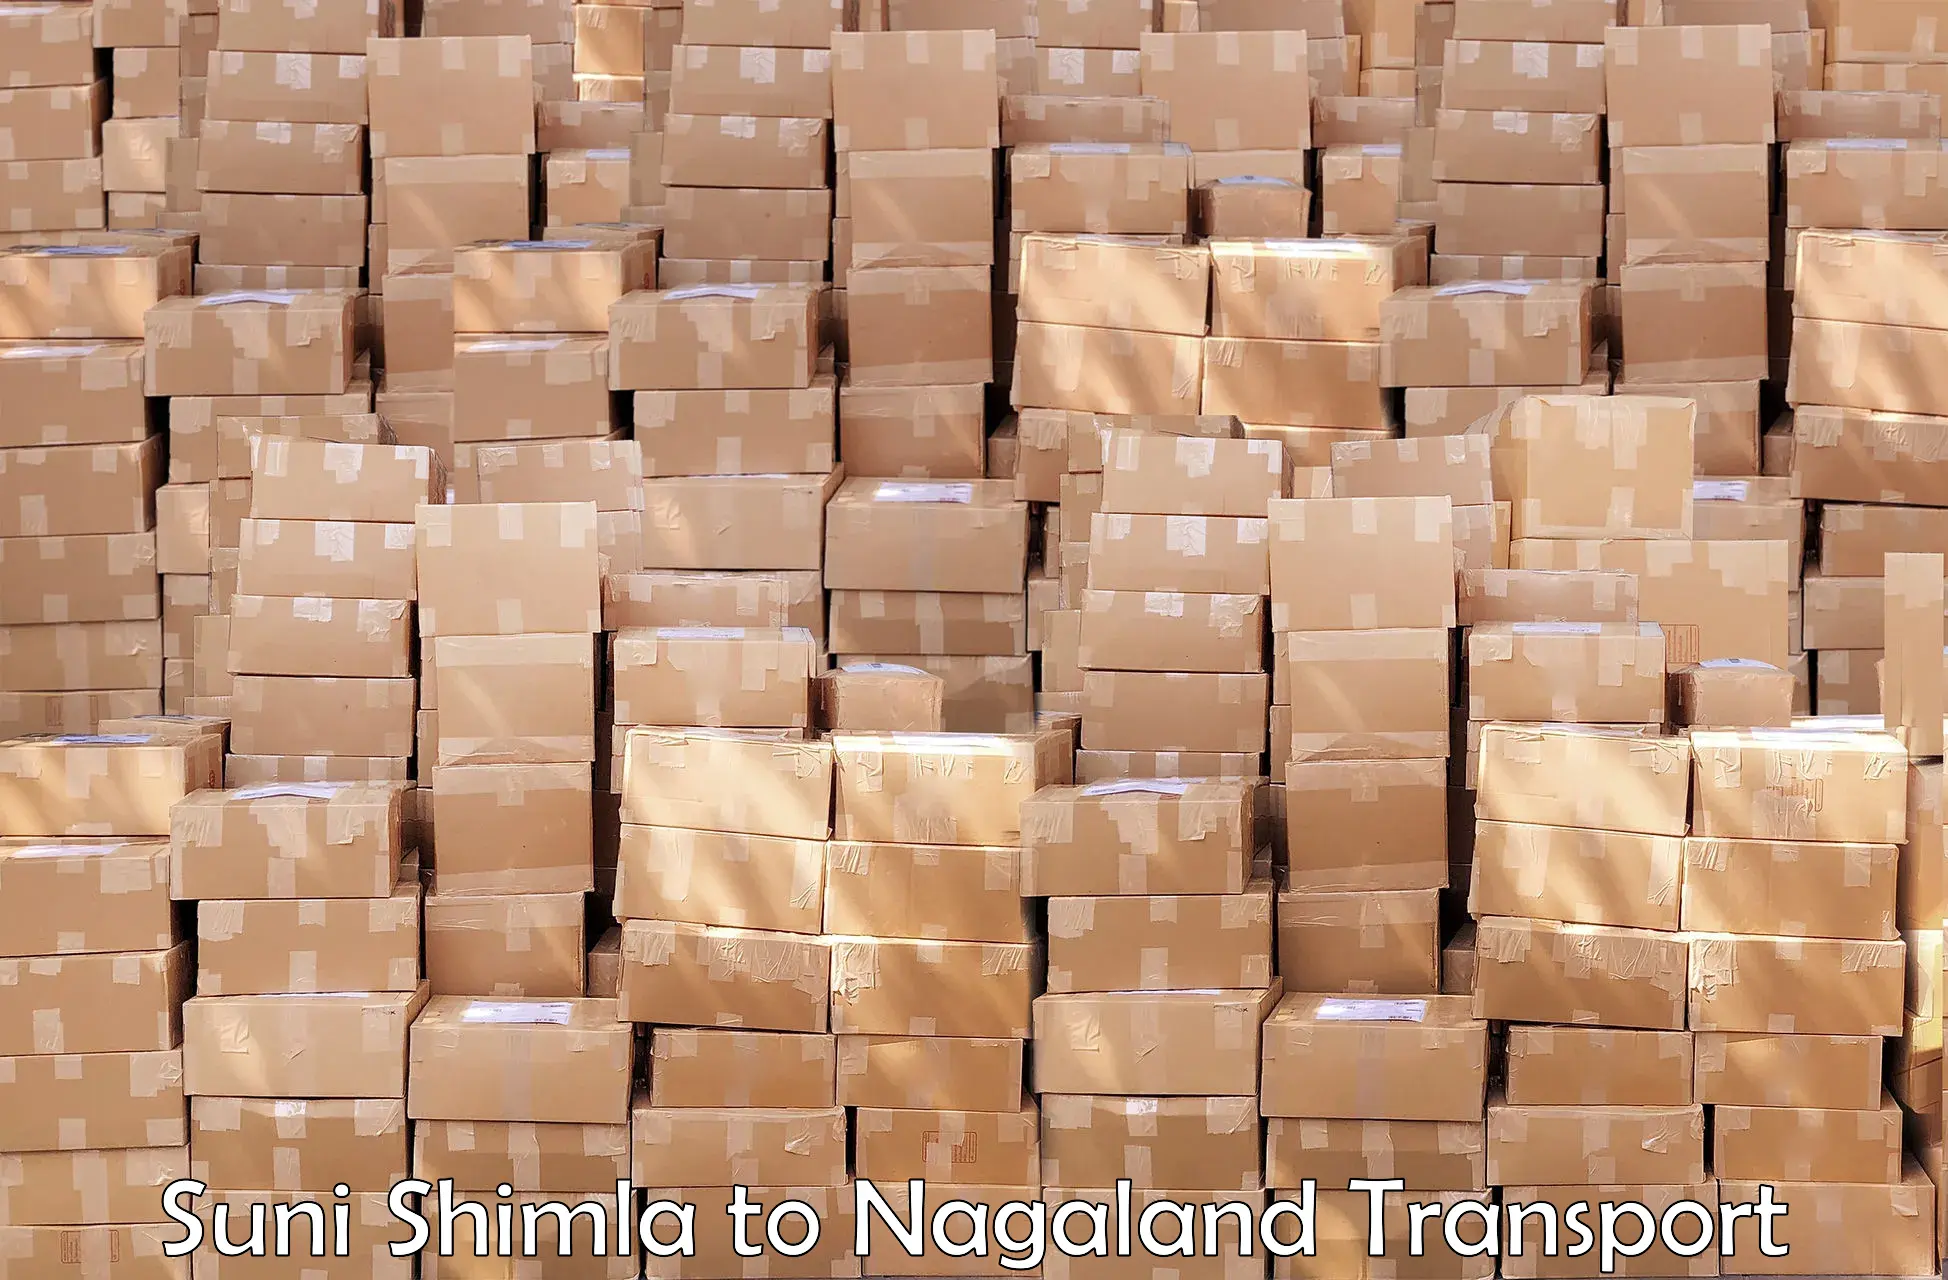 Bike shipping service Suni Shimla to Nagaland